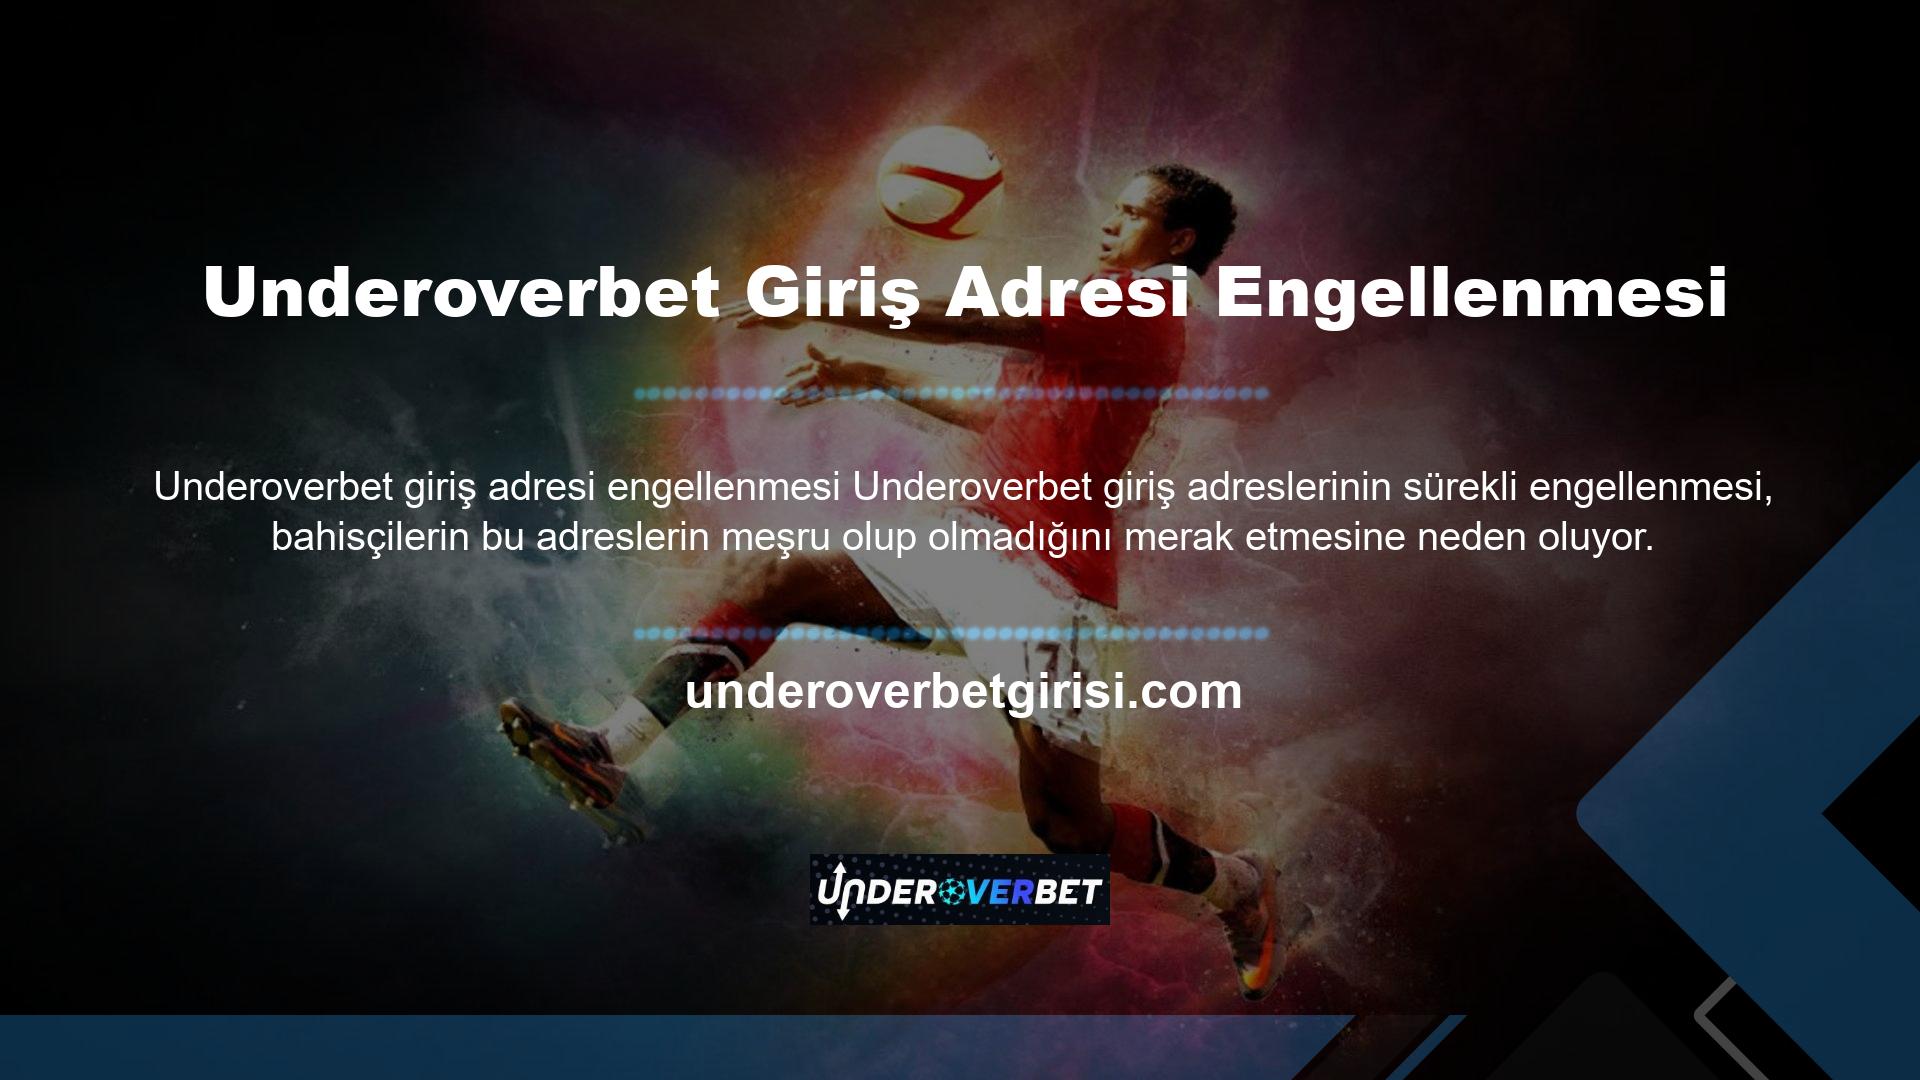 Son güncellemeden bu yana bu web sitesinin giriş adresi Underoverbet olarak değişmiştir